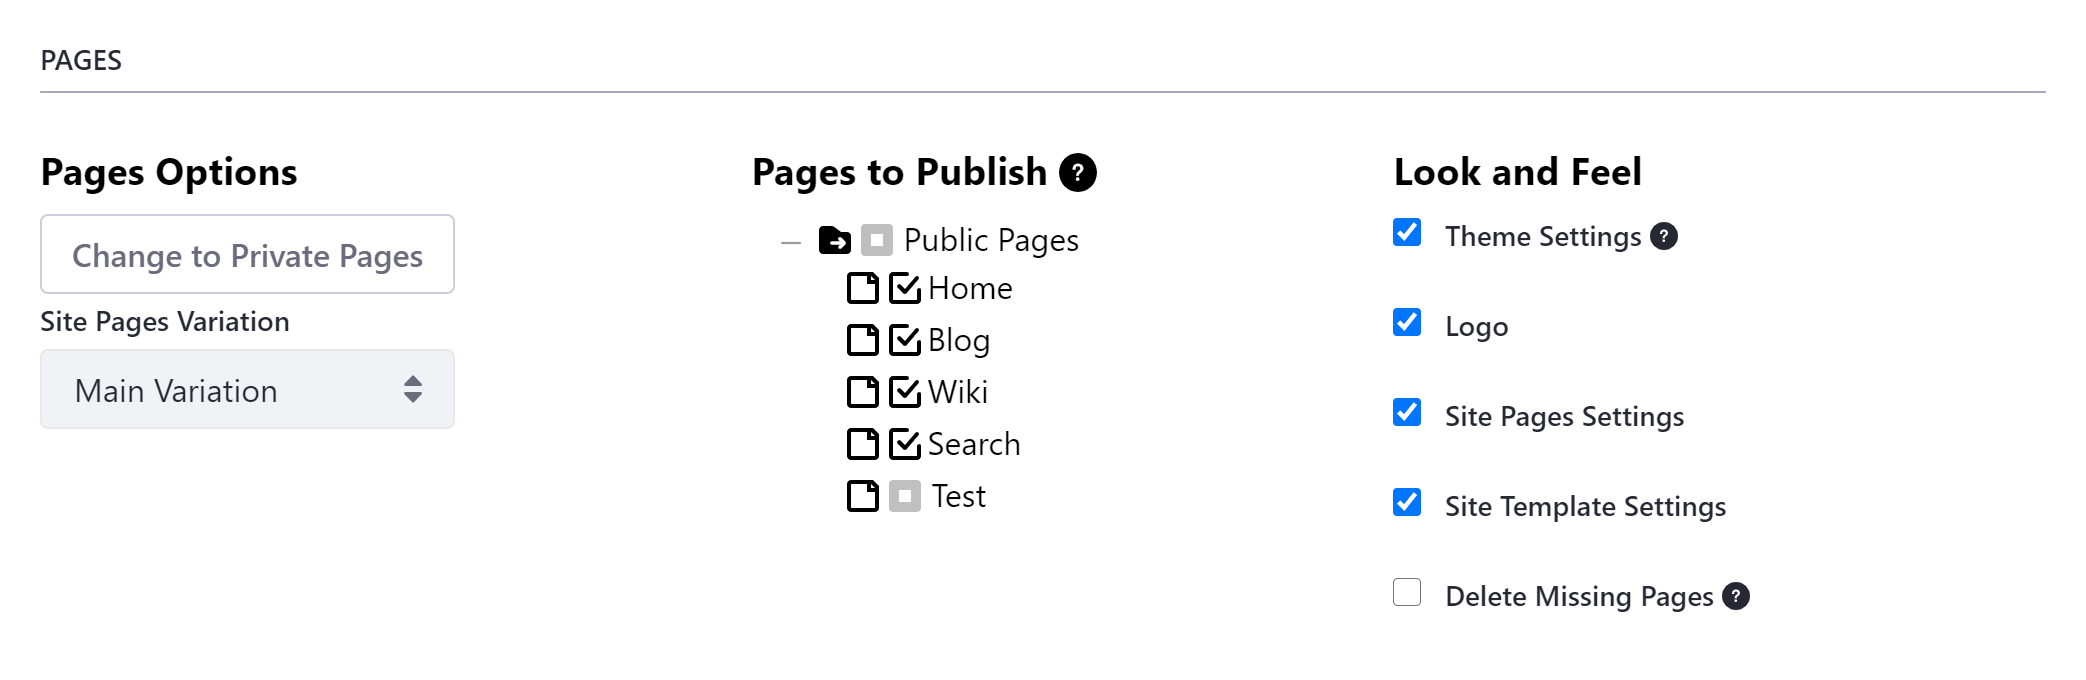 公開するページセットのバリエーションや個々のページ、選択したページのルック＆フィールを選択することができます。